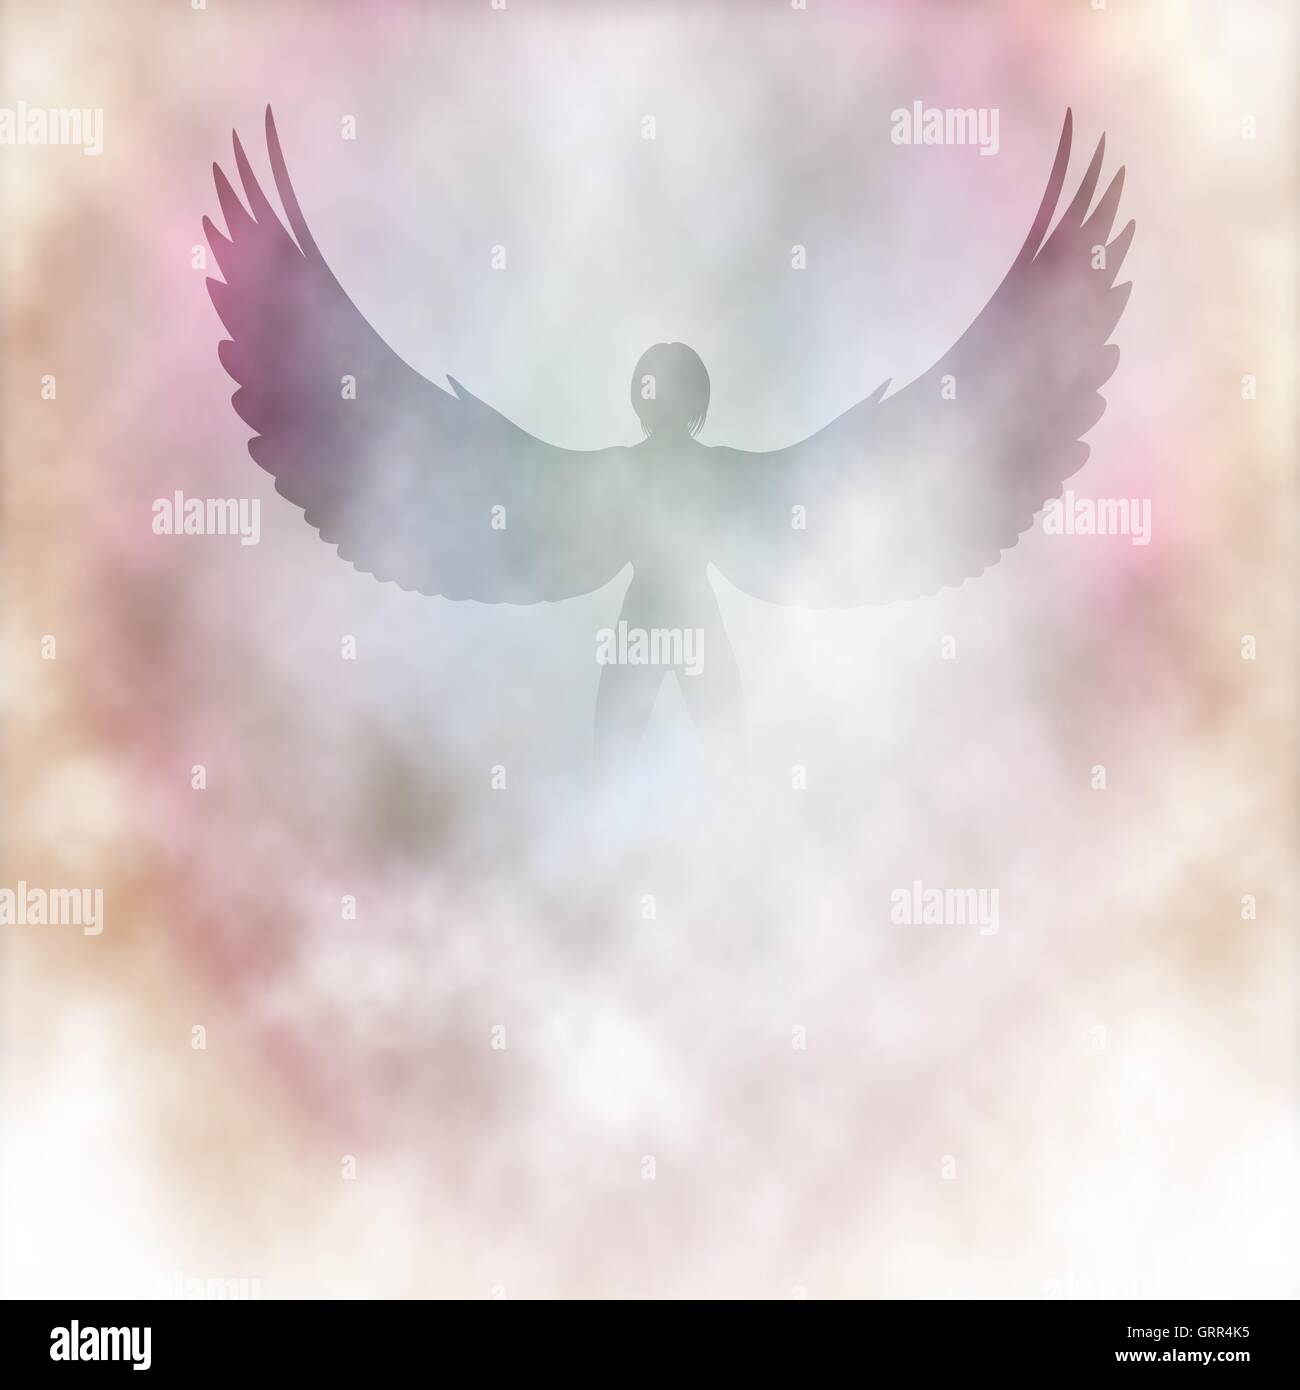 Ilustración vectorial editable de un ángel alado en nubes de humo o realizadas con mallas de degradado Ilustración del Vector